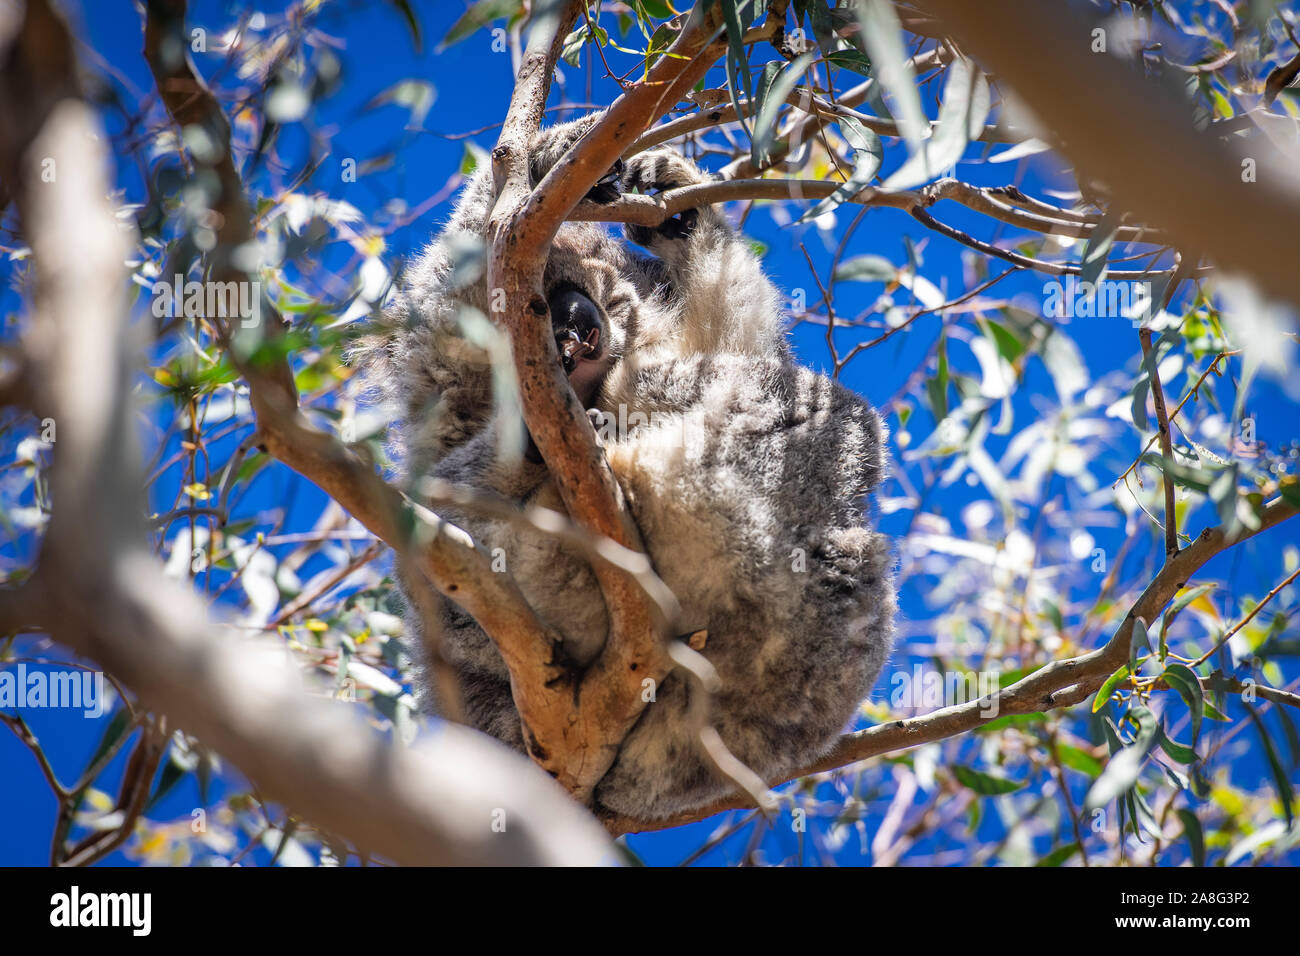 A wild koala sits sleeping in an Eucalyptus tree at Kennett Park, Victoria, Australia. Stock Photo